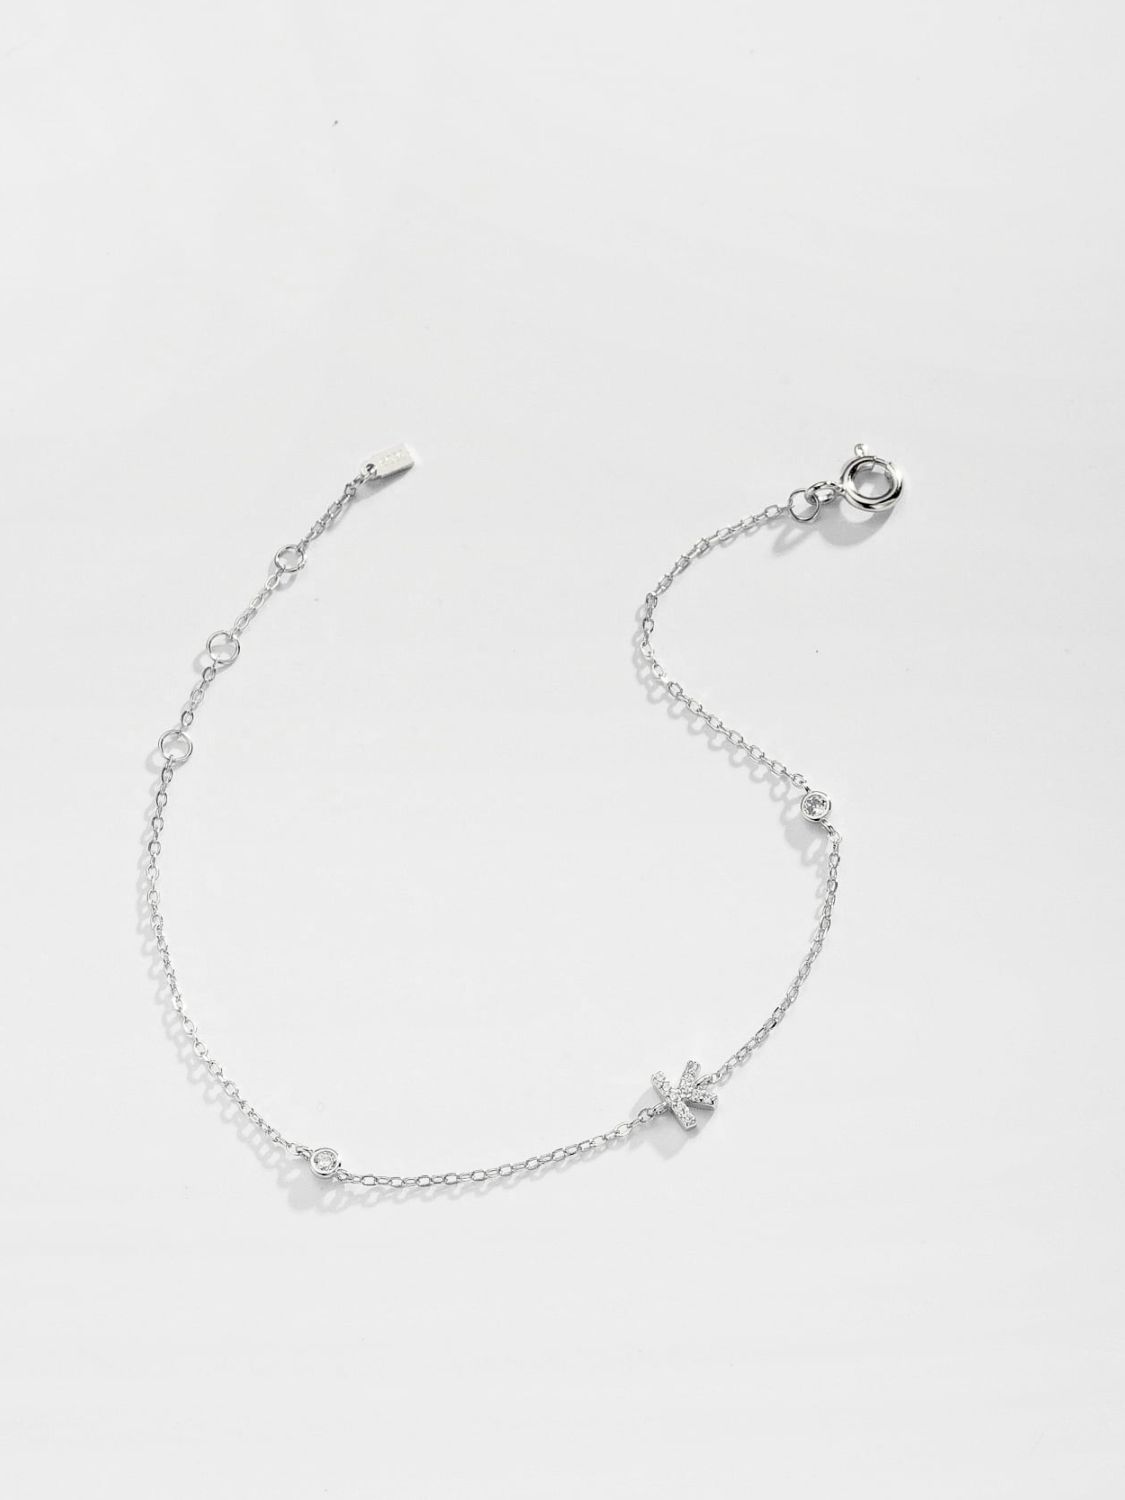 Zircon 925 Sterling Silver Bracelet - Women’s Jewelry - Bracelets - 30 - 2024